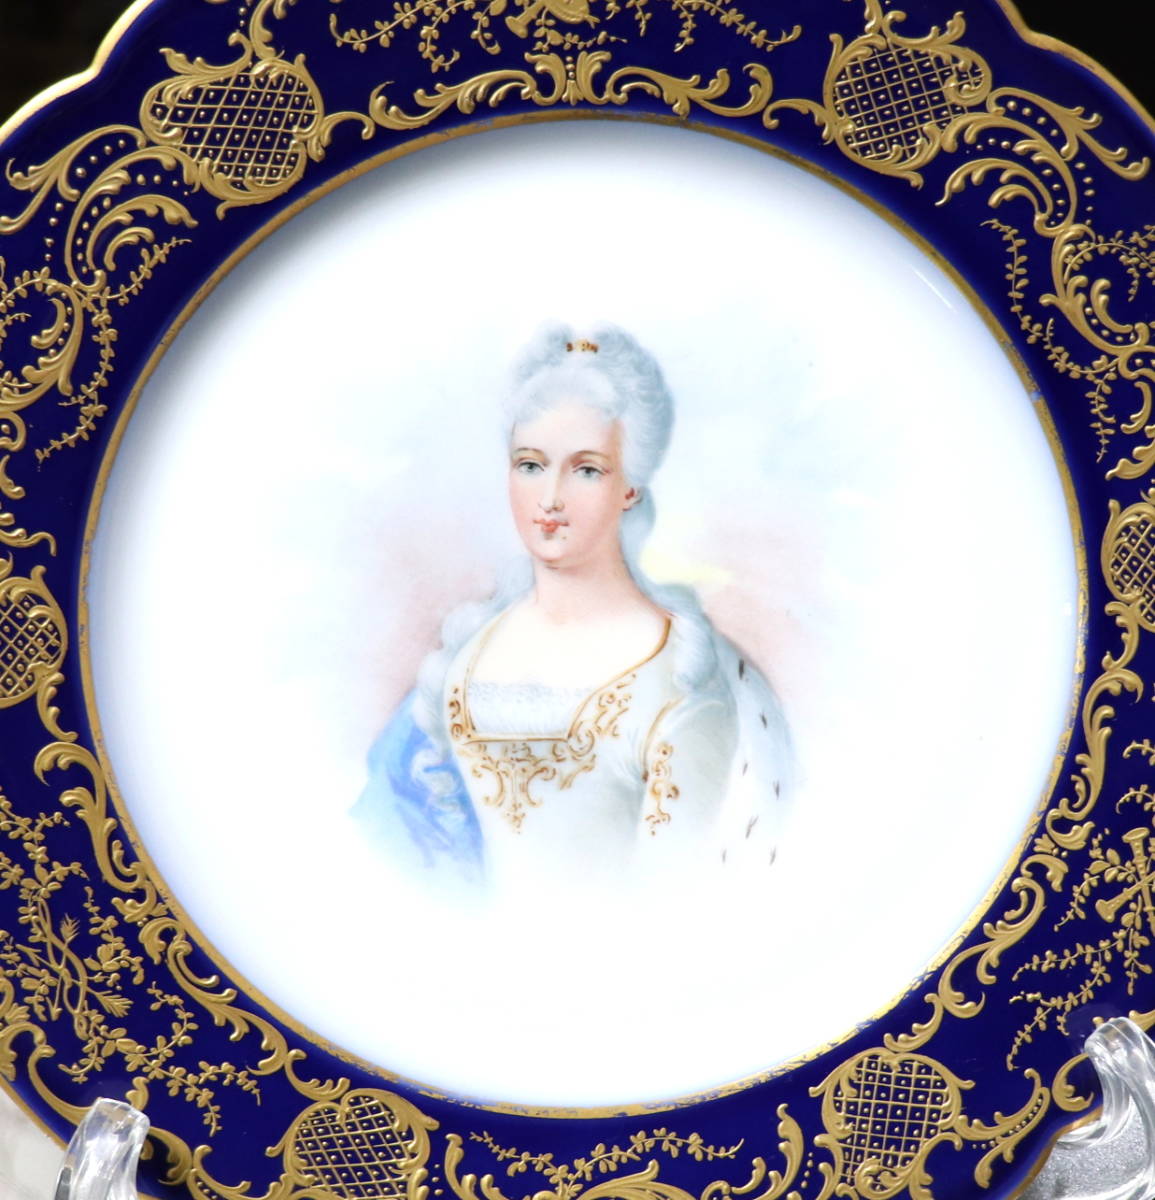 アンティーク・セーブル 大型 金彩盛り上げ飾り皿 デュ・バリー夫人